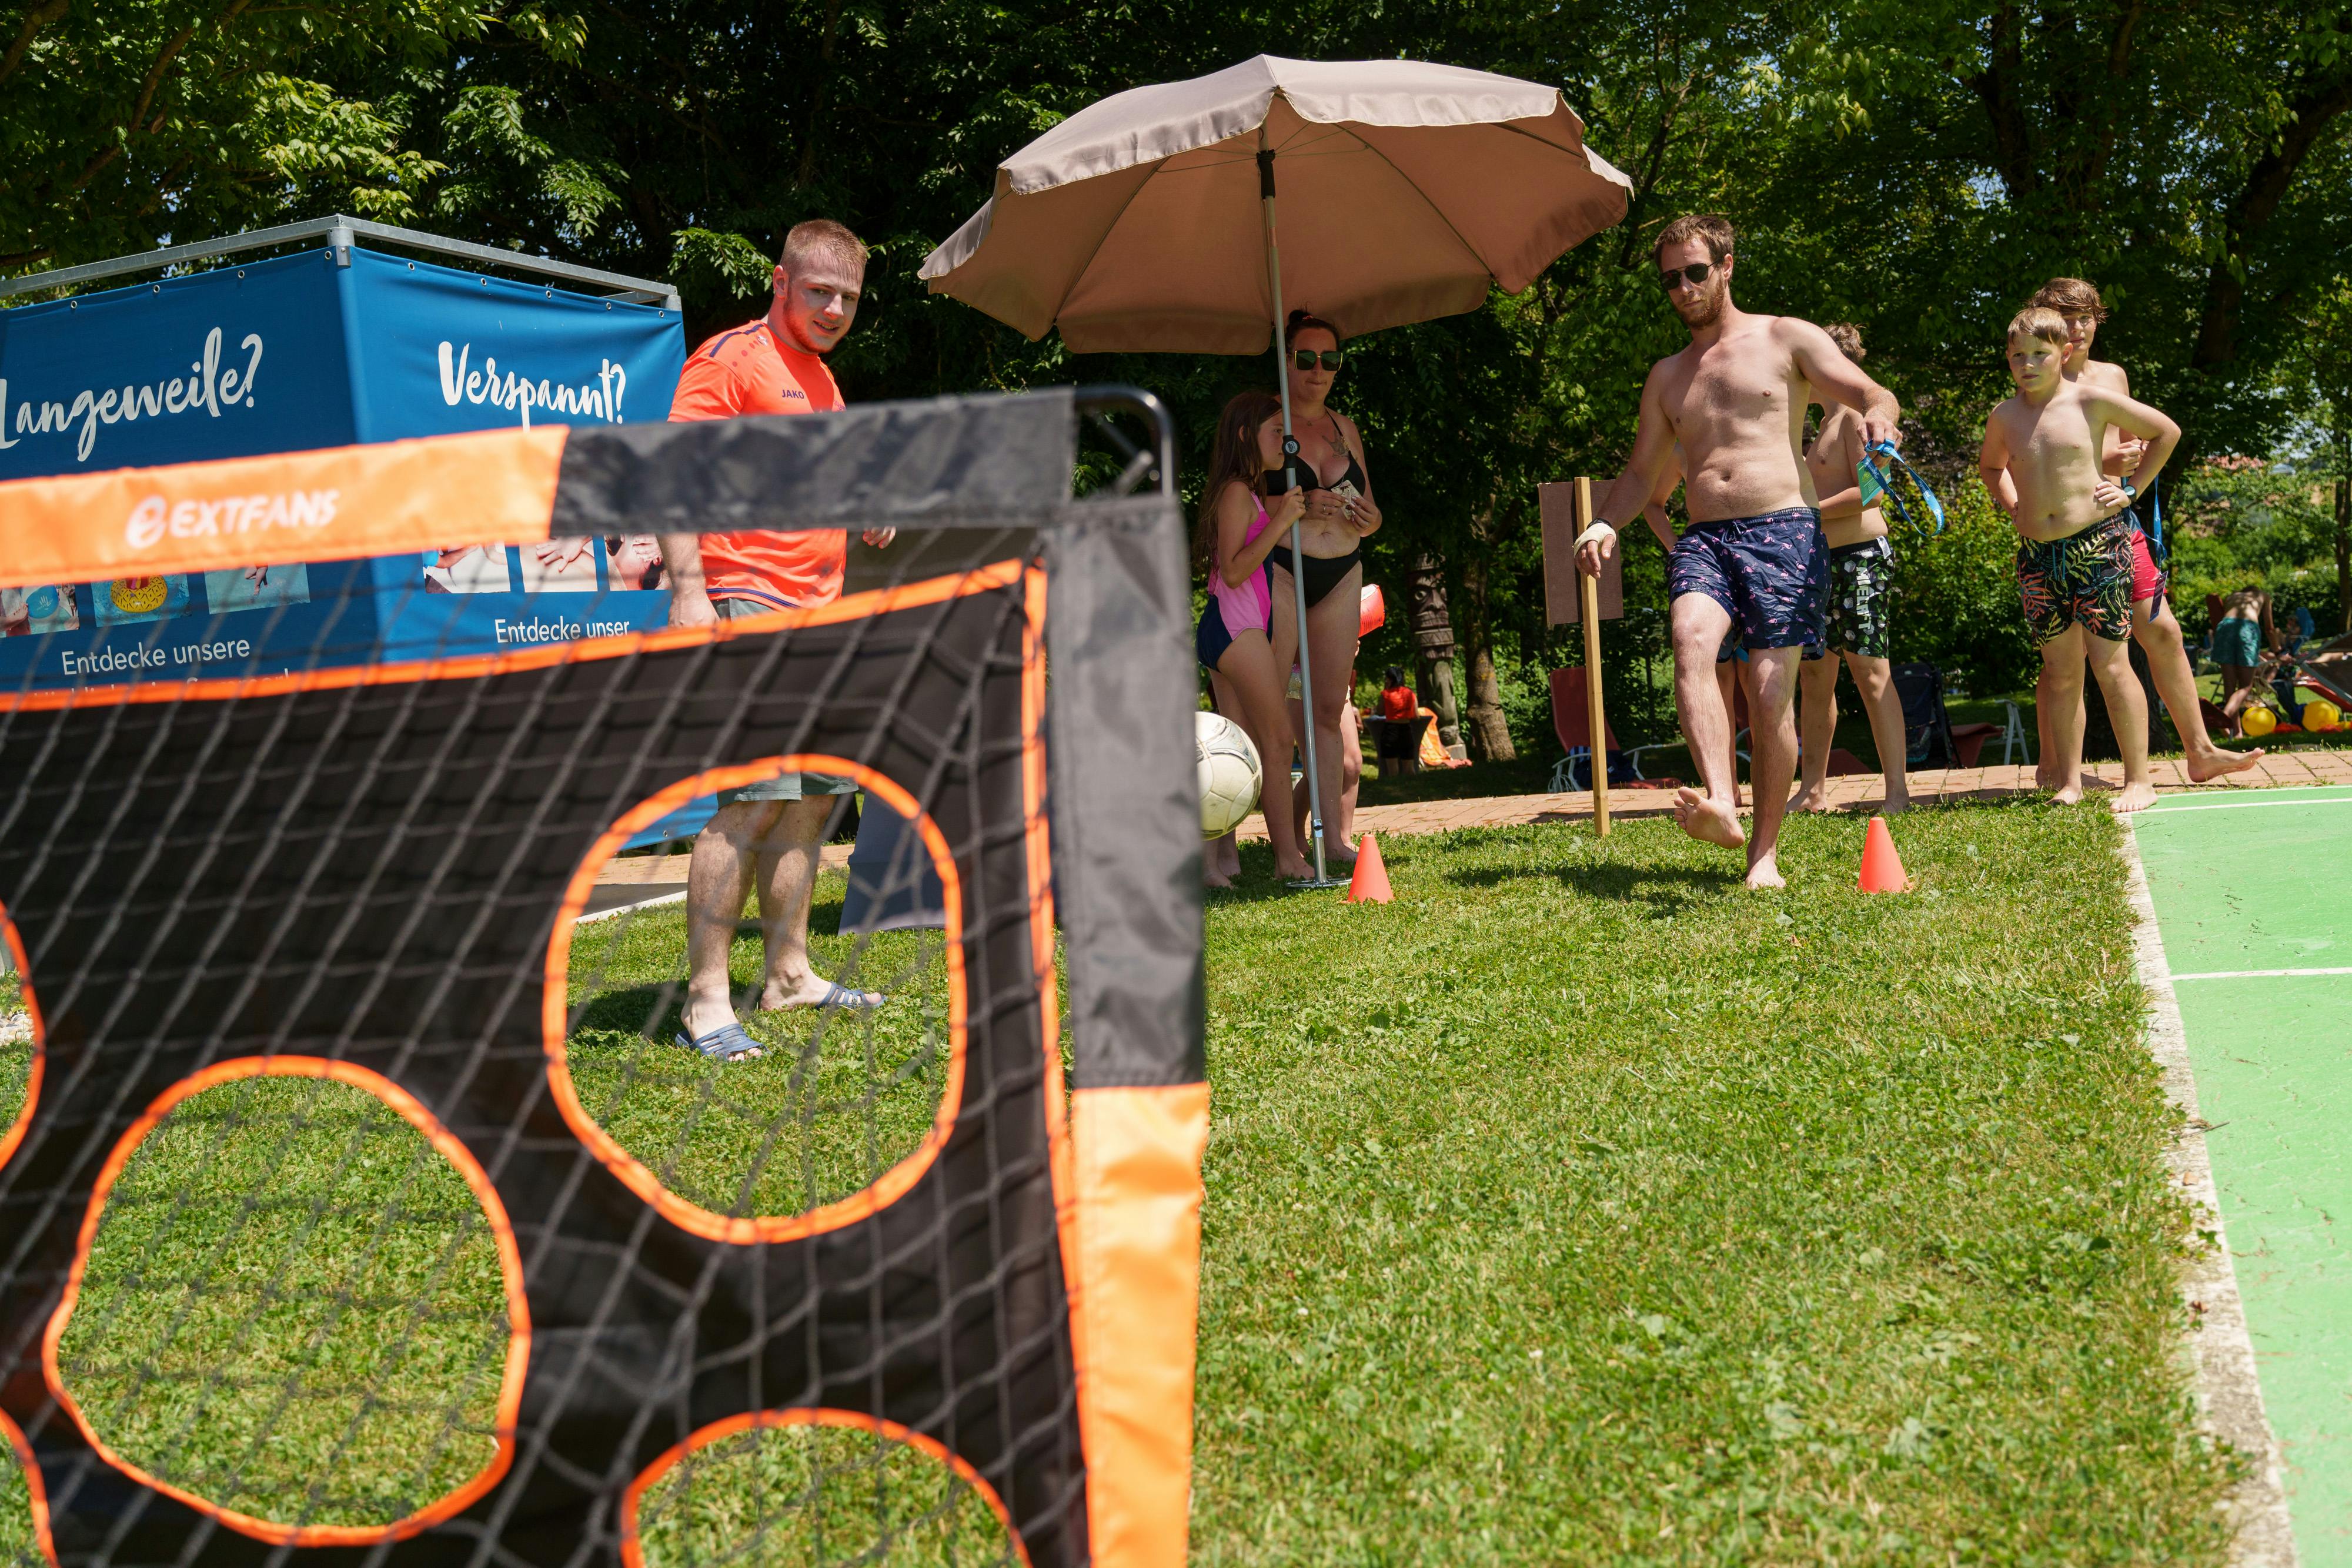 Erlebt den ultimativen Wasserball-Spaß in Loipersdorf! #WeAreWater-Fest - ein Muss für alle Wasserratten.